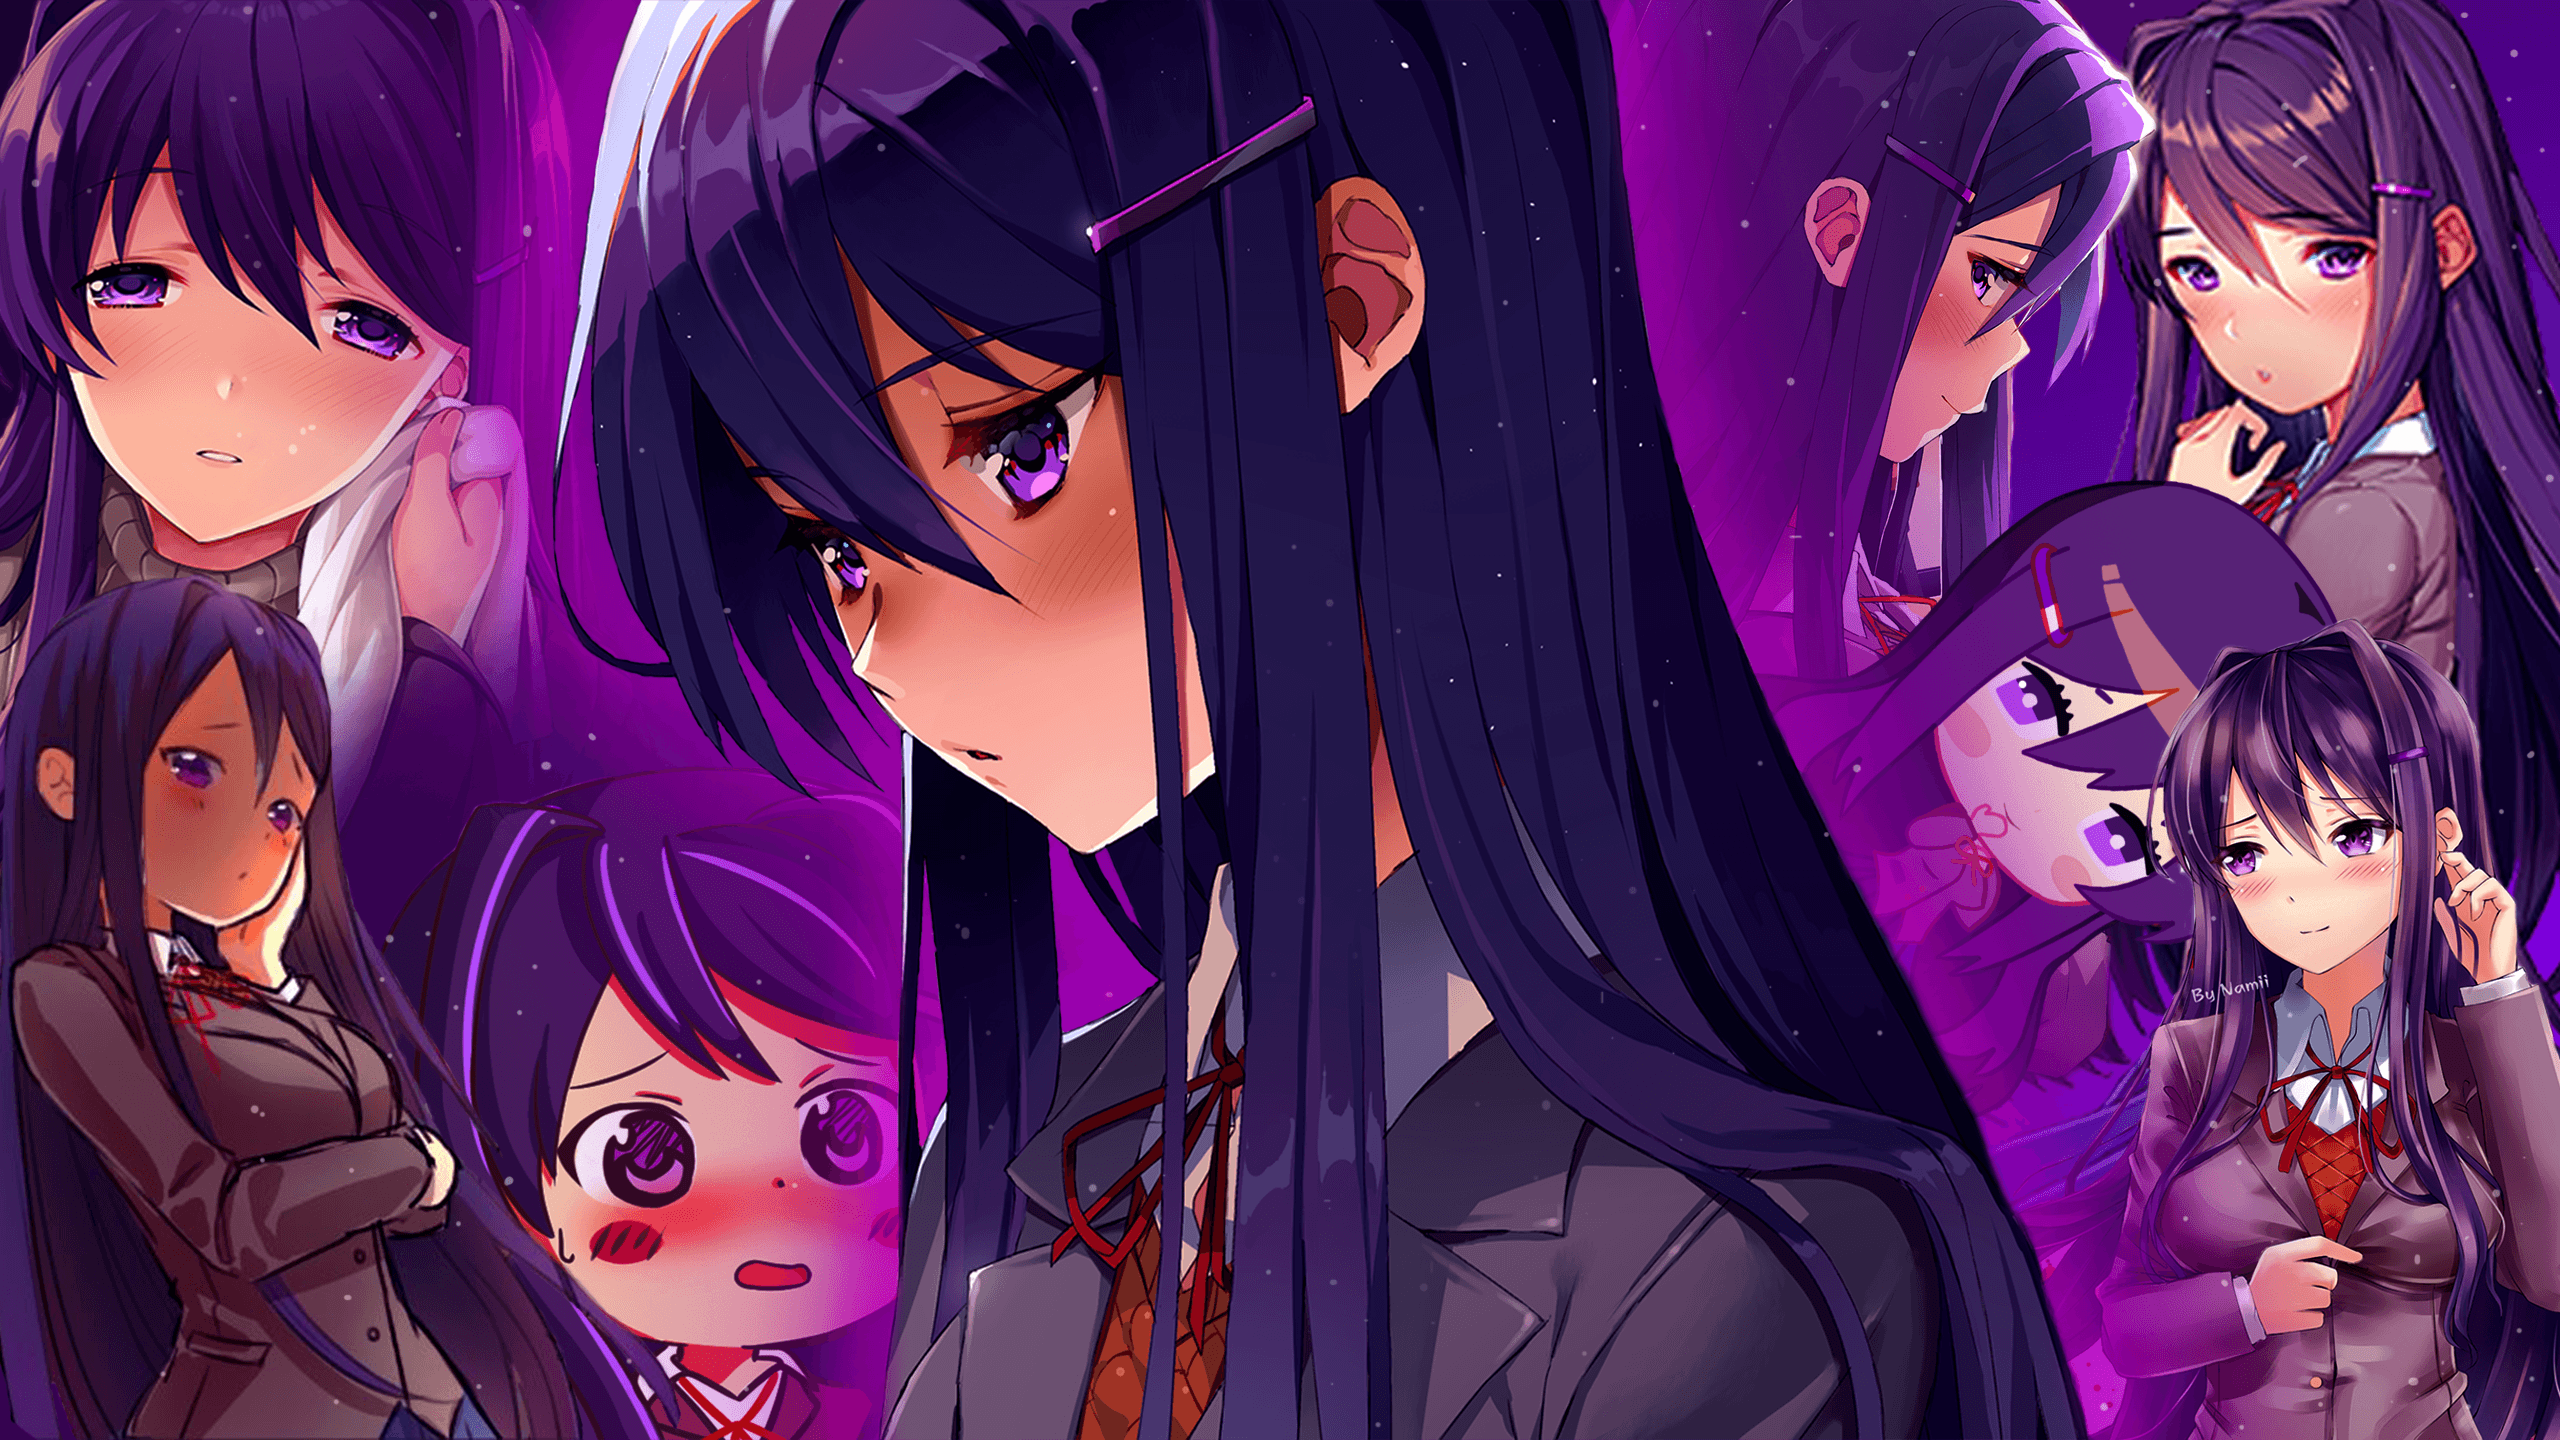 Wallpaper, DDLC, Doki Doki Literature Club, purple hair, Yuri Doki Doki Literature Club, anime girls 2560x1440